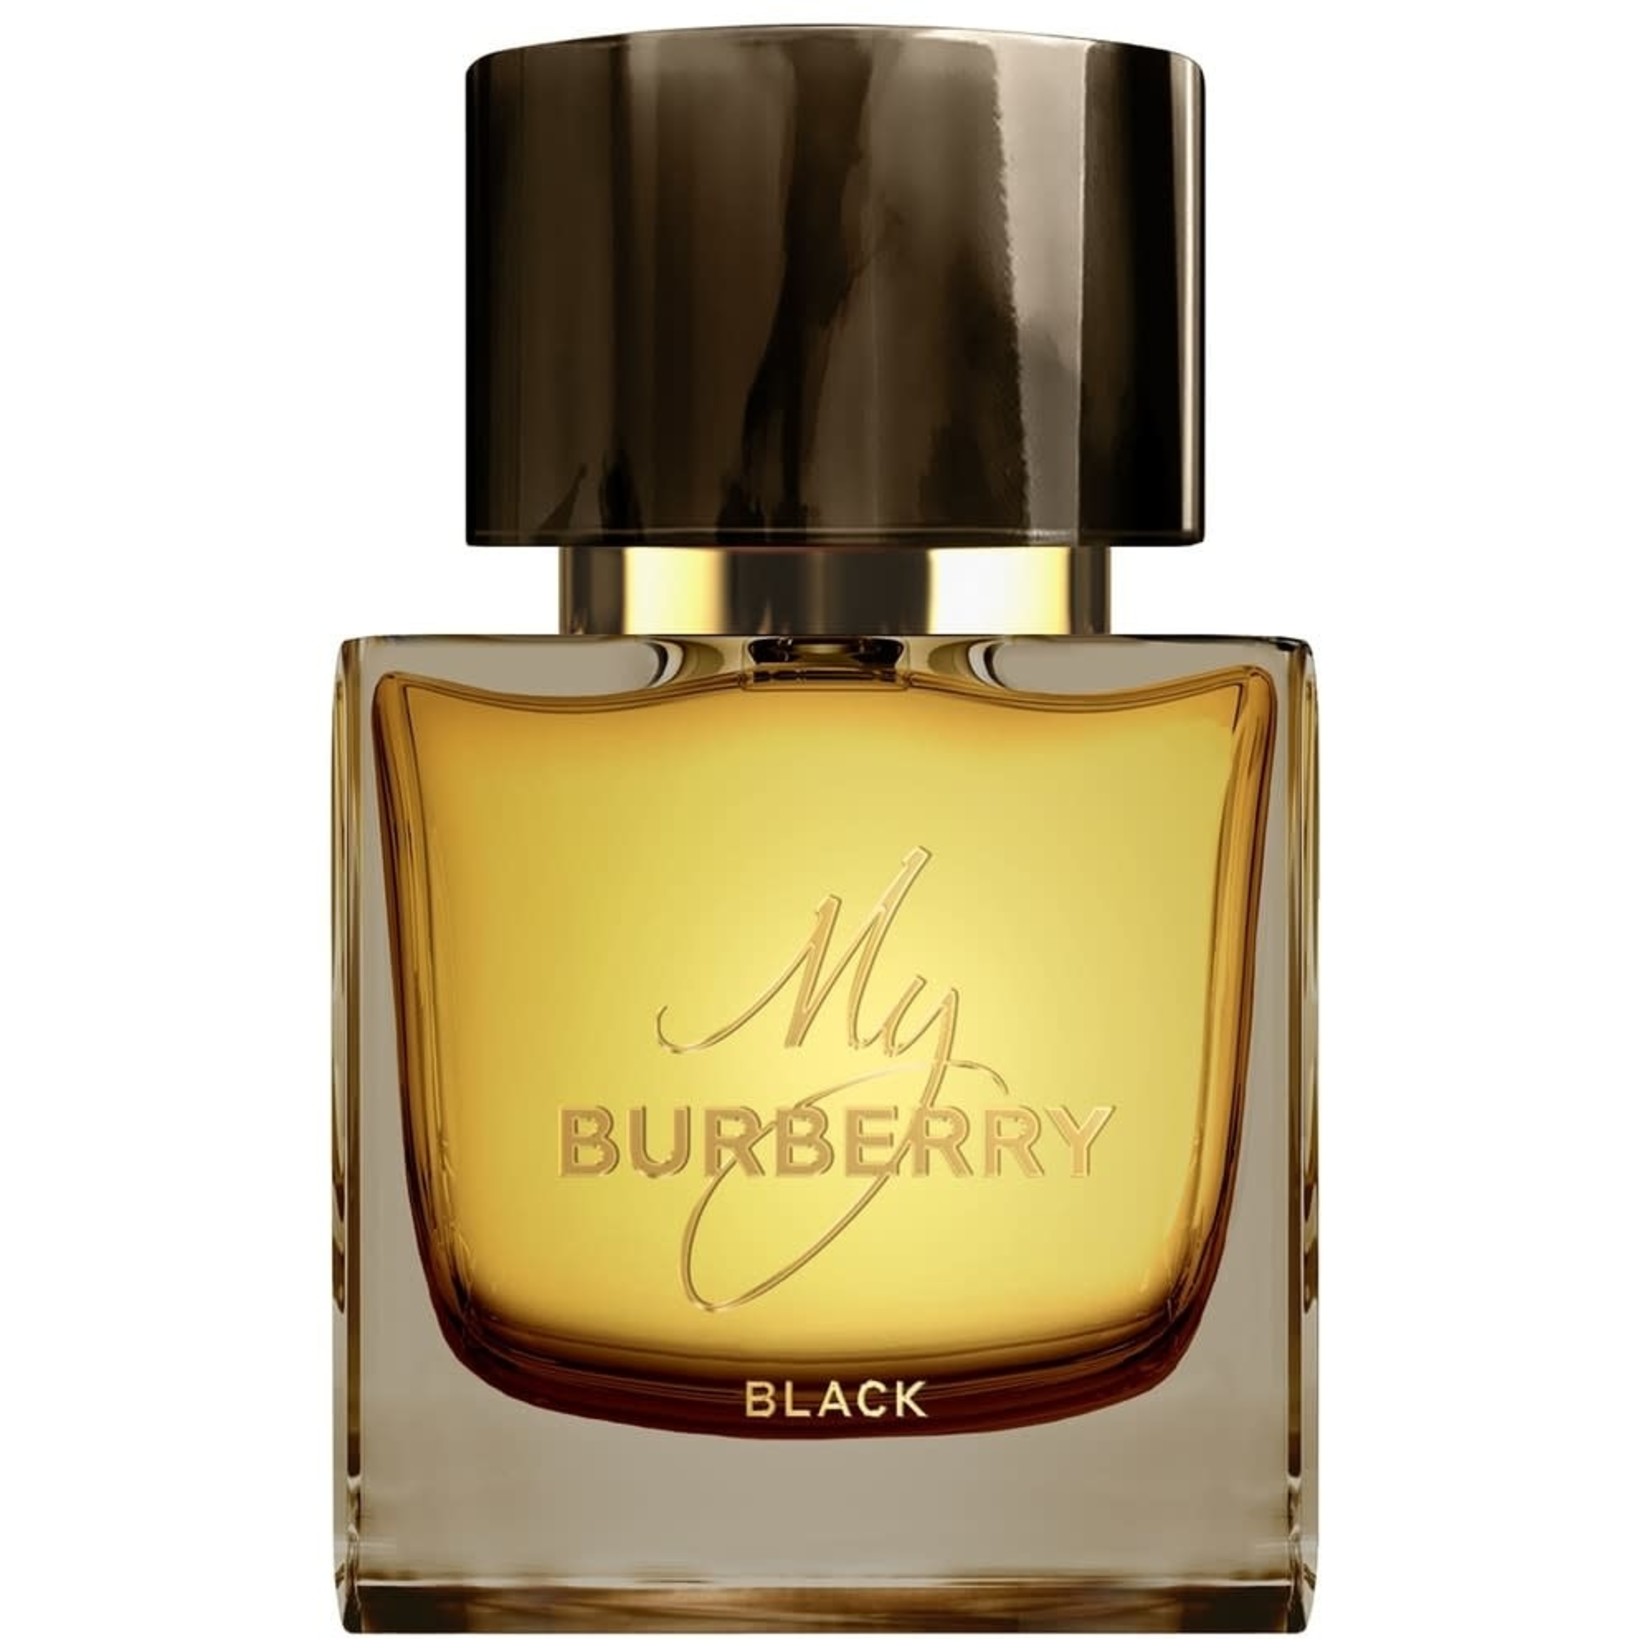 BURBERRY BURBERRY - MY BURBERRY BLACK Eau De Parfum